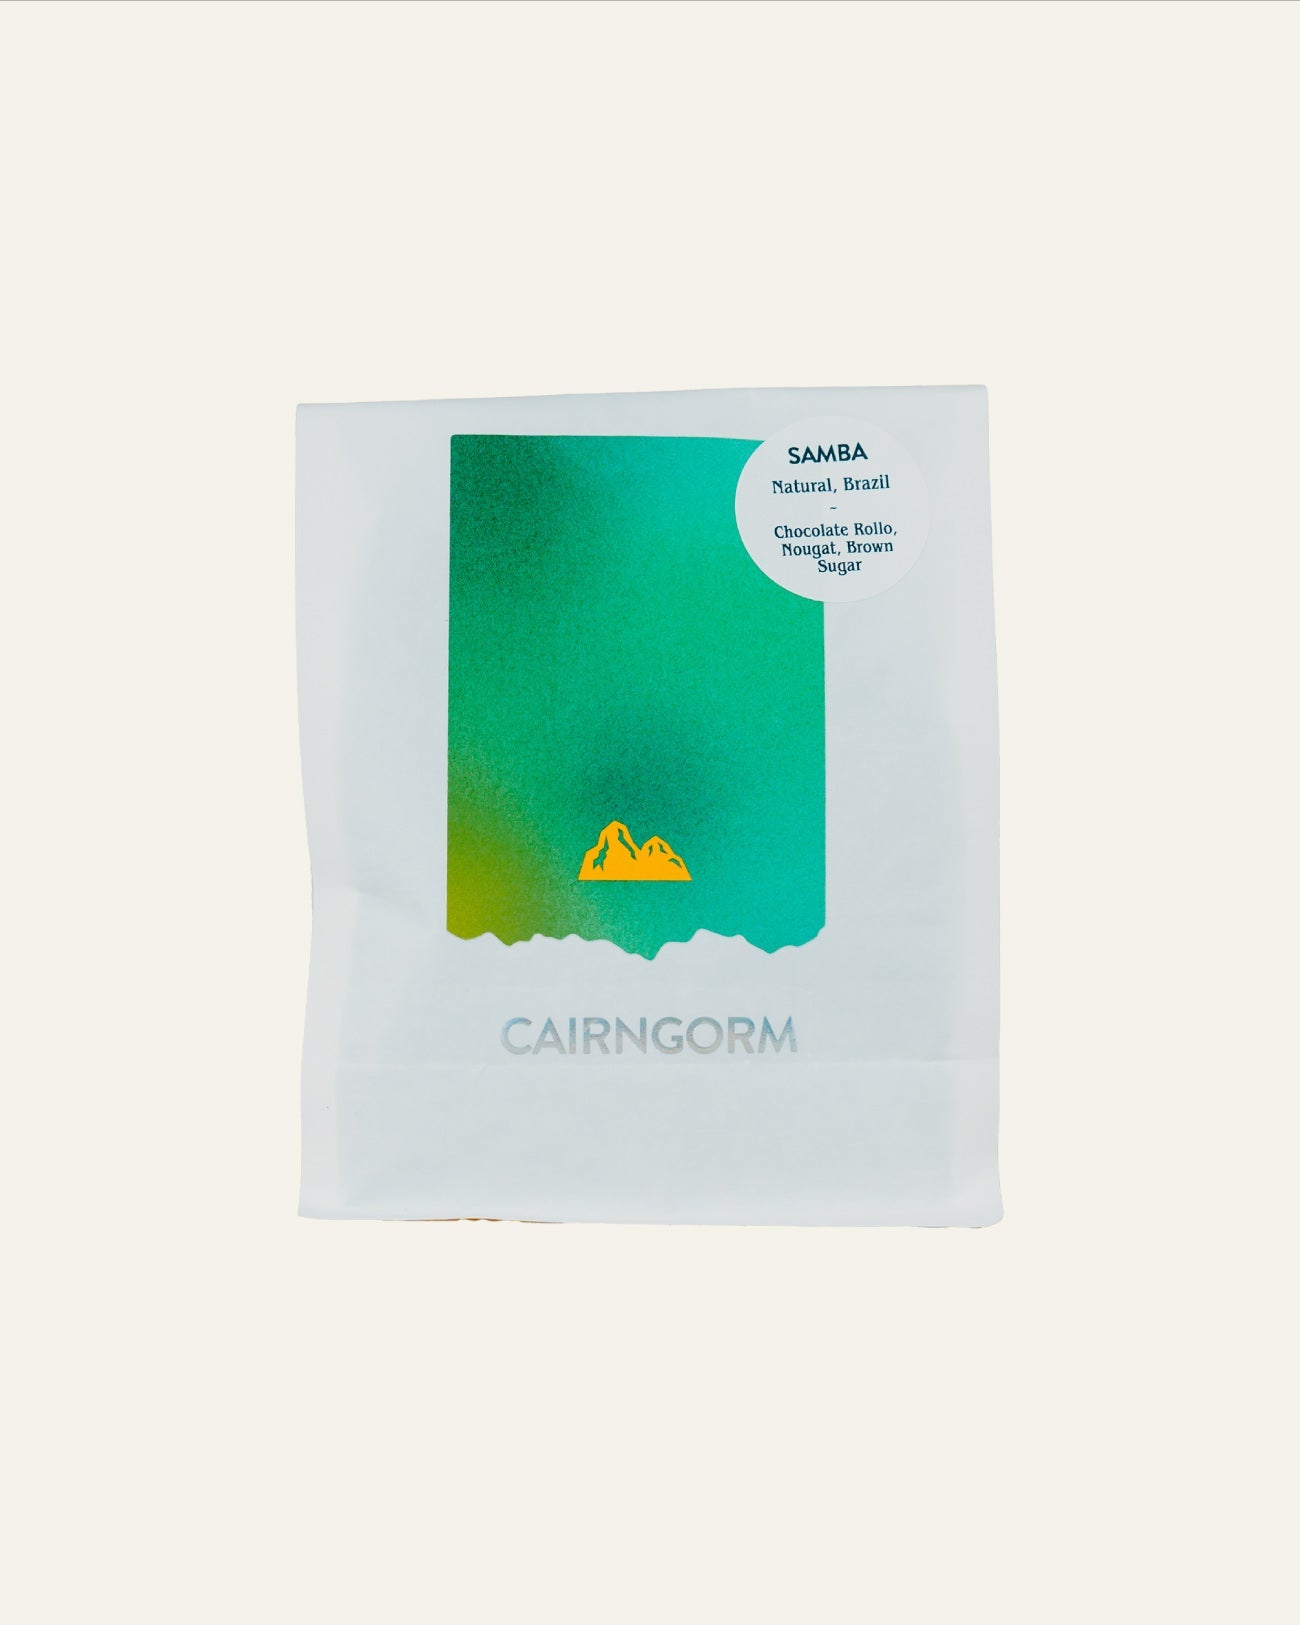 Cairngorm Coffee - Samba - Hidden Scotland